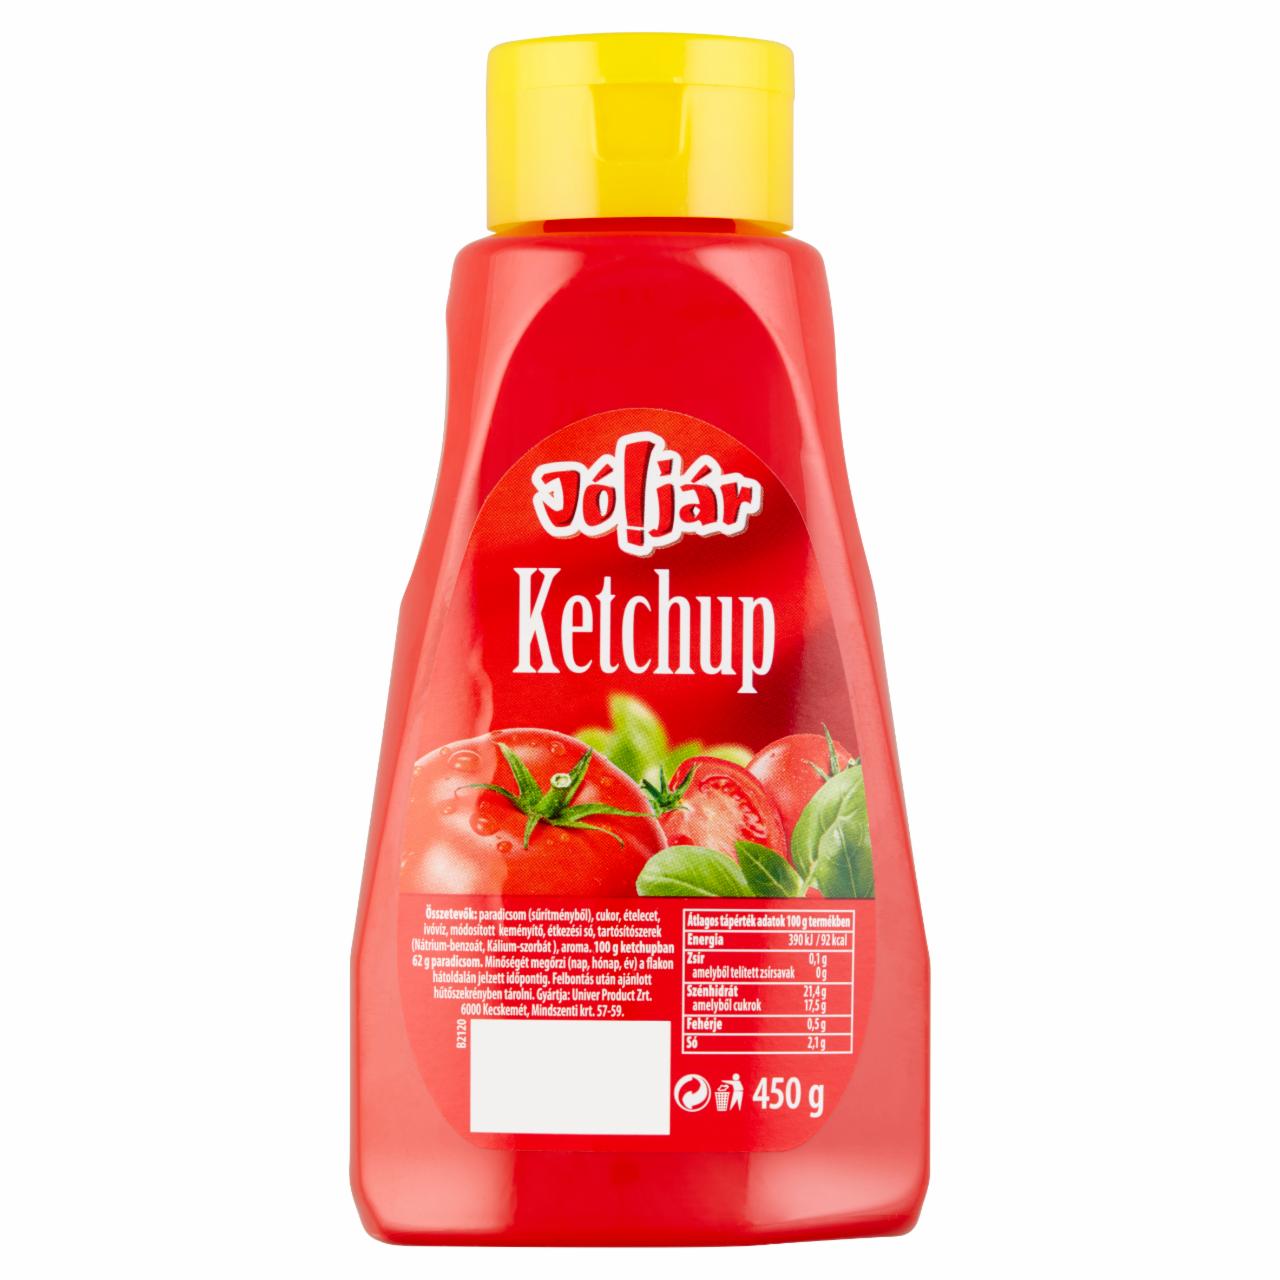 Képek - Jó!jár ketchup 450 g